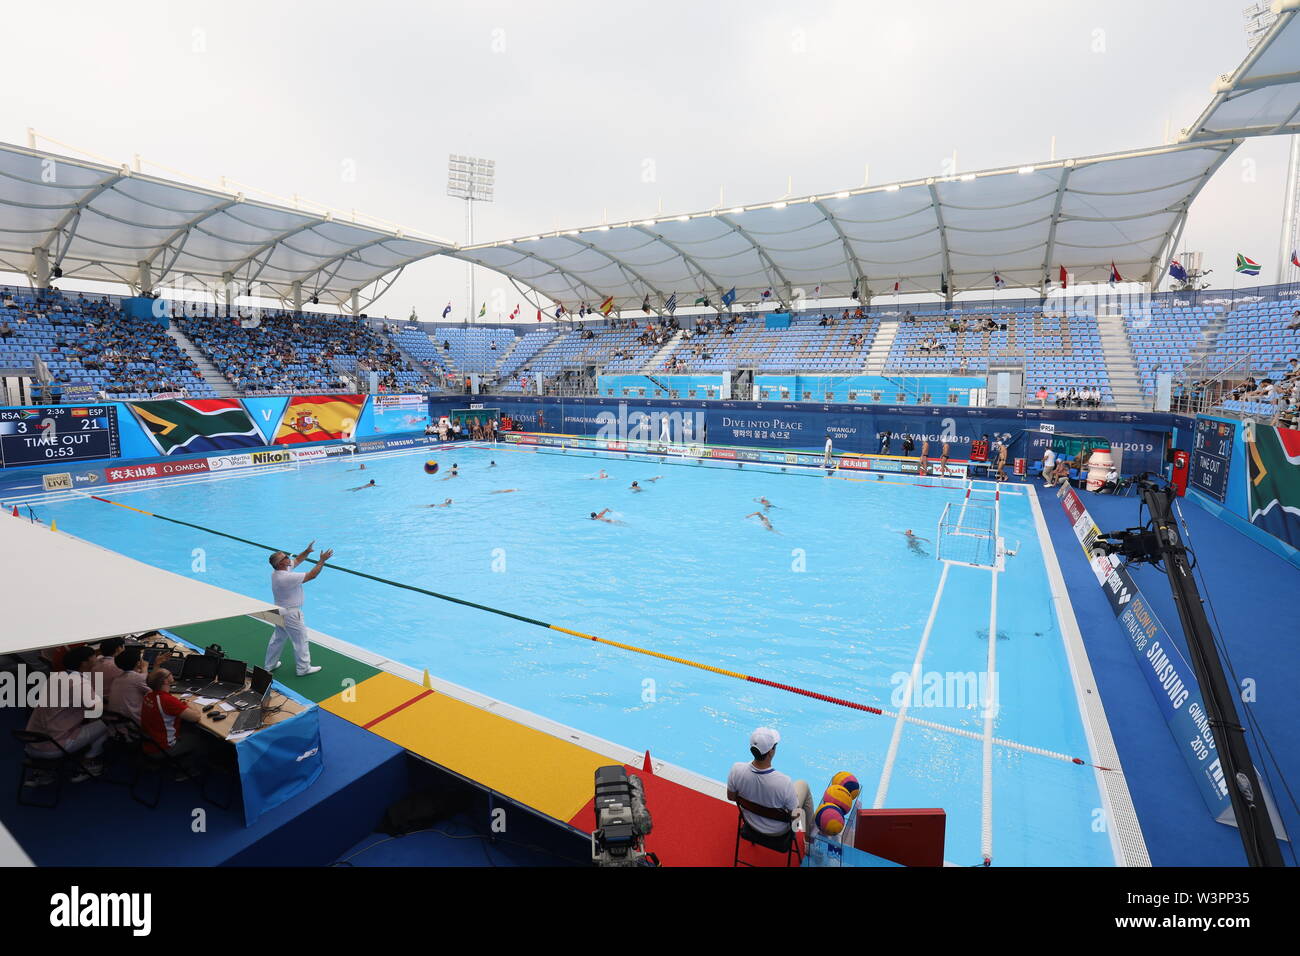 Mistrovstvi sveta v plavani v Gwangju. Vnitrni pohled na stadion s docasnym bazenem 35x25x2 m pro zapasy vodniho pola v Nambu University. Prave probih Stock Photo